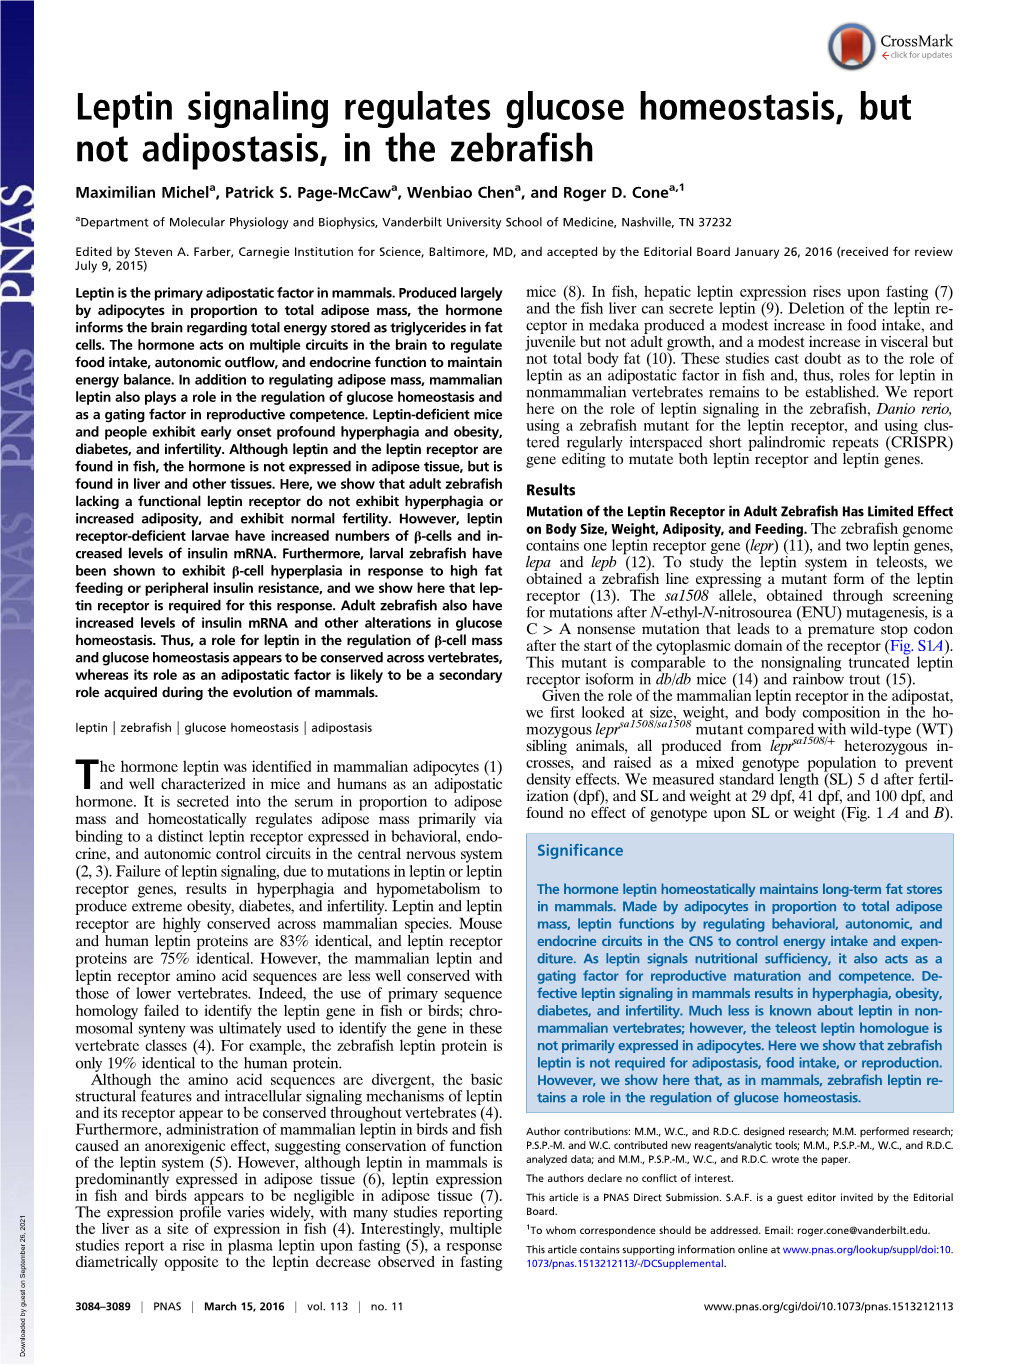 Leptin Signaling Regulates Glucose Homeostasis, but Not Adipostasis, in the Zebrafish